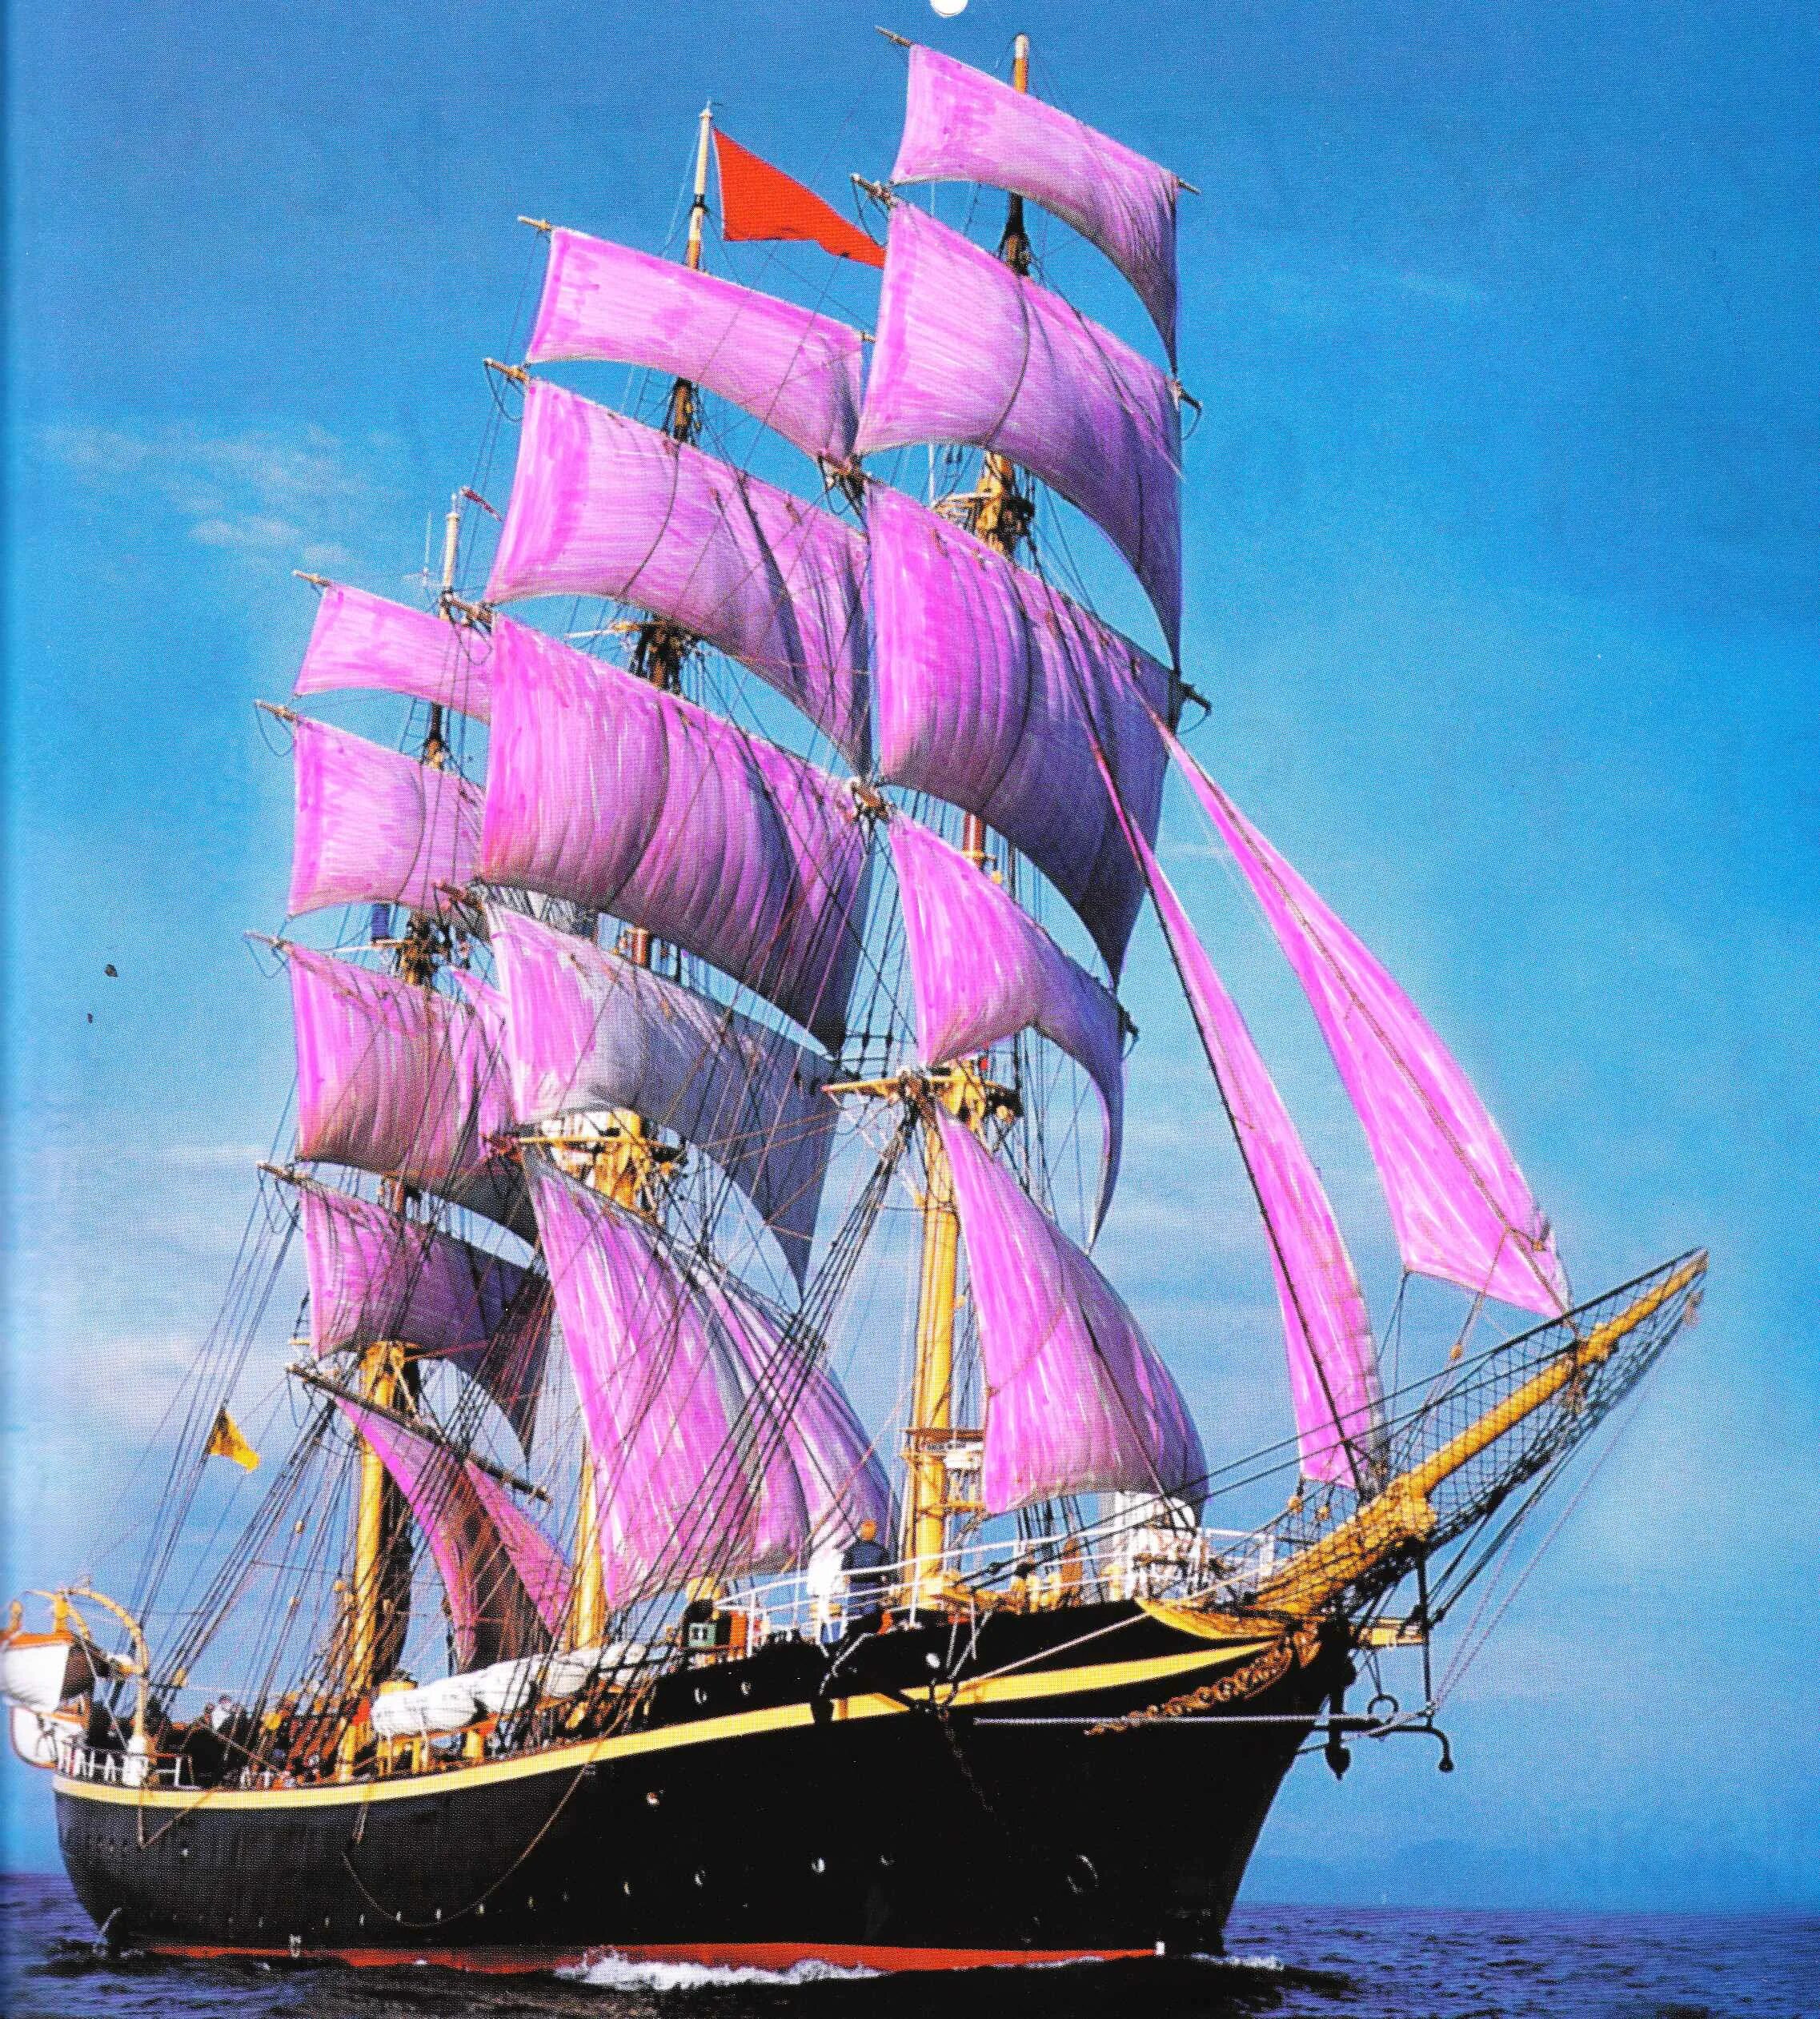 Какого цвета корабли. Парусник Роял клипер. Красивый корабль. Корабль с фиолетовыми парусами. Корабль с цветными парусами.